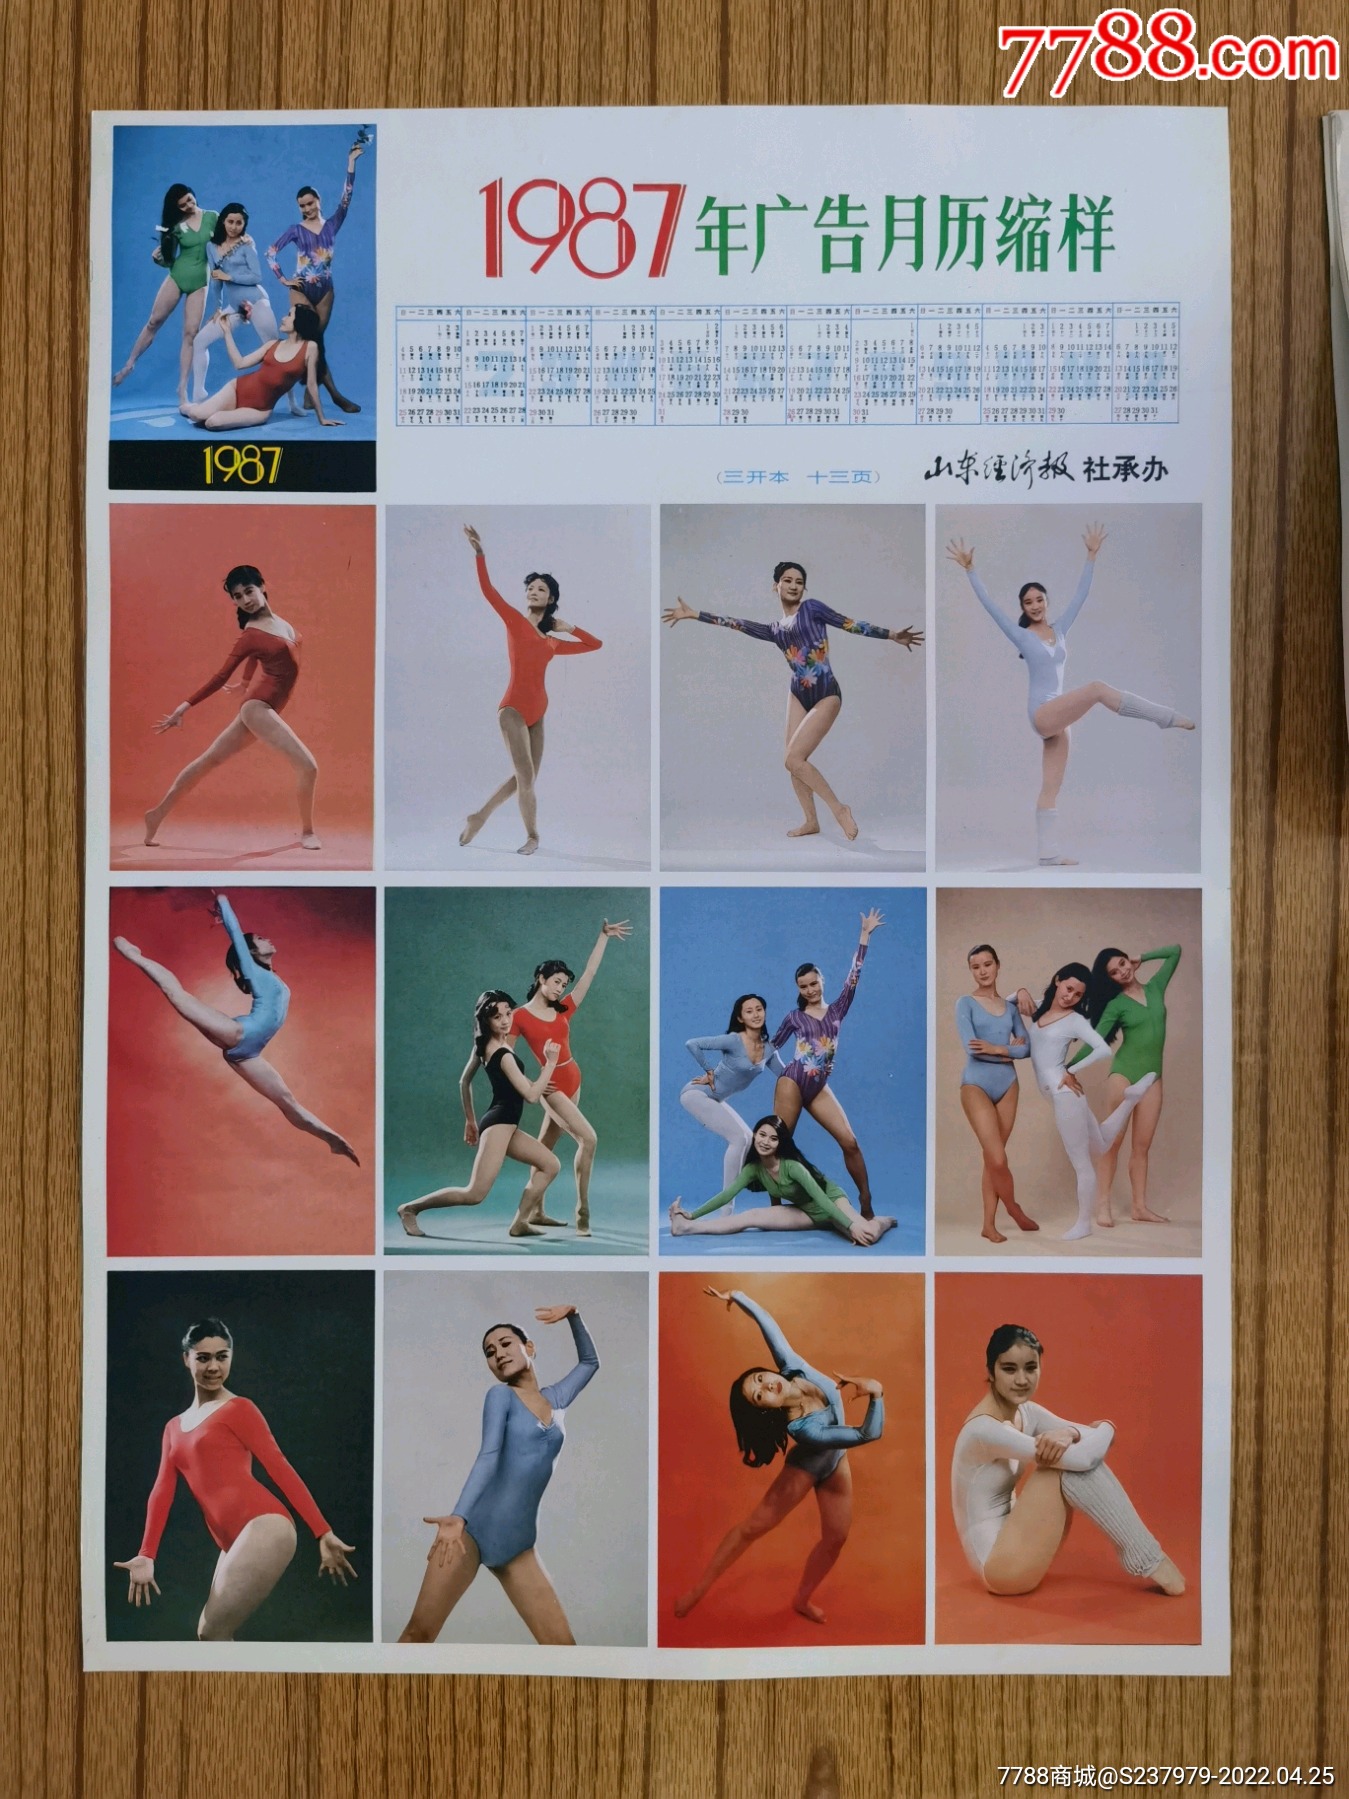 1987年广告月历缩样(艺术体操健美泳装)